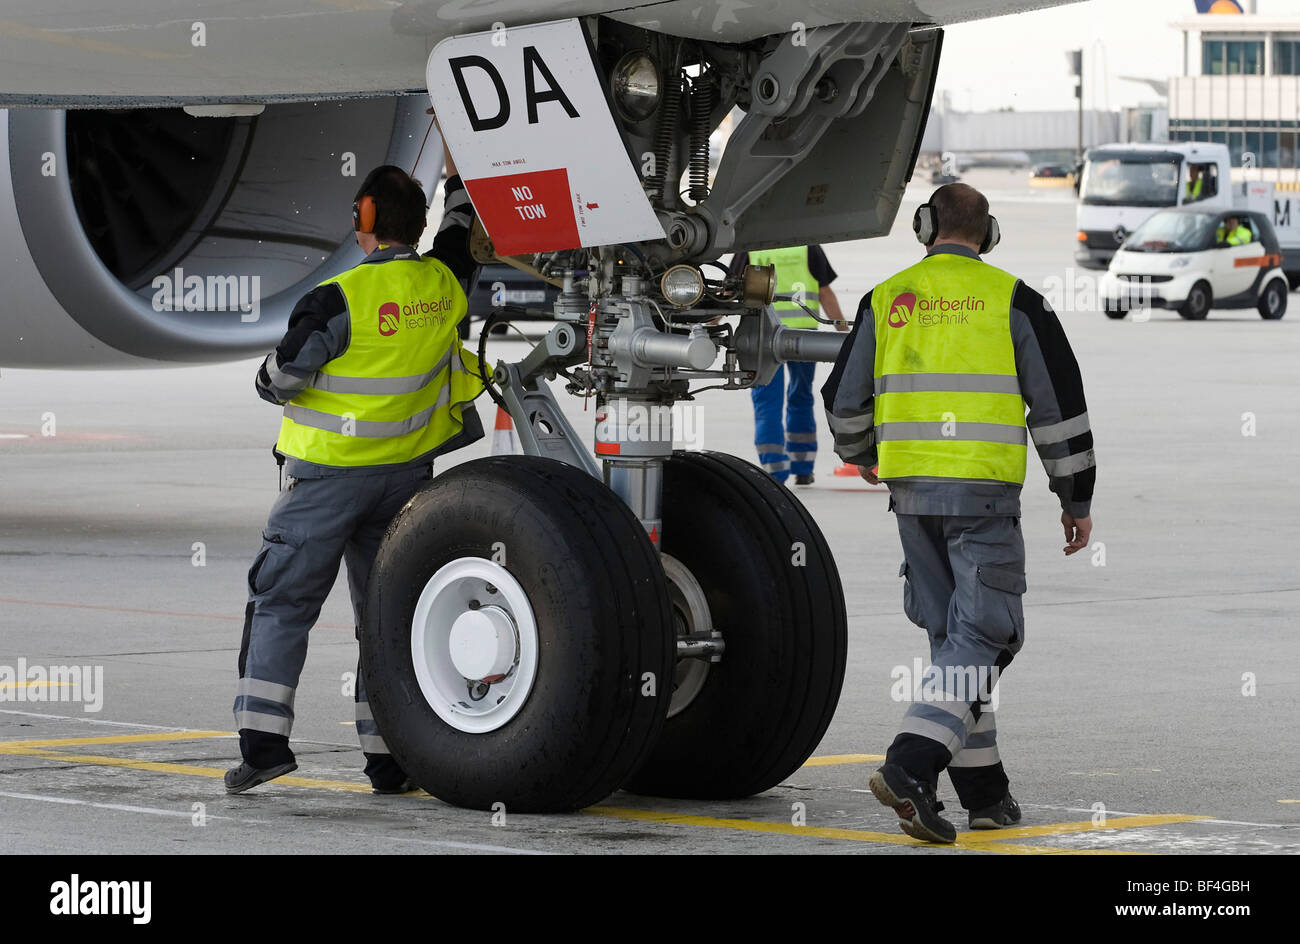 Technische Bodenpersonal arbeiten unter einem Airbus A330-200 der Fluggesellschaft Oman Air, Flughafen München, Bayern, Deutschland, Europa Stockfoto